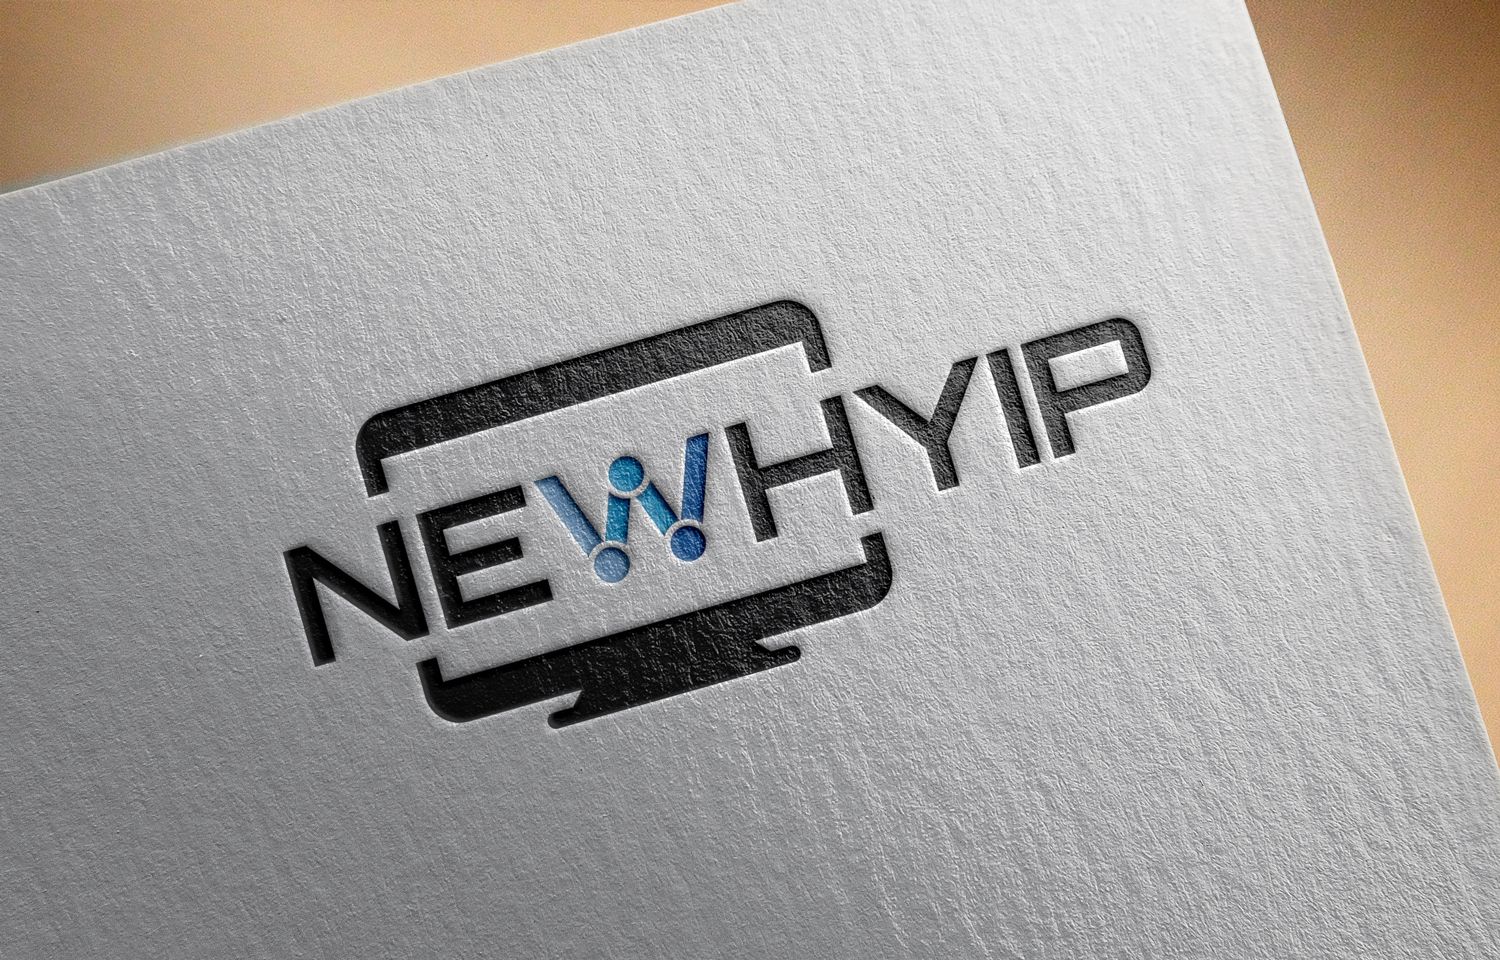 Логотип для newhyip - дизайнер Ninpo